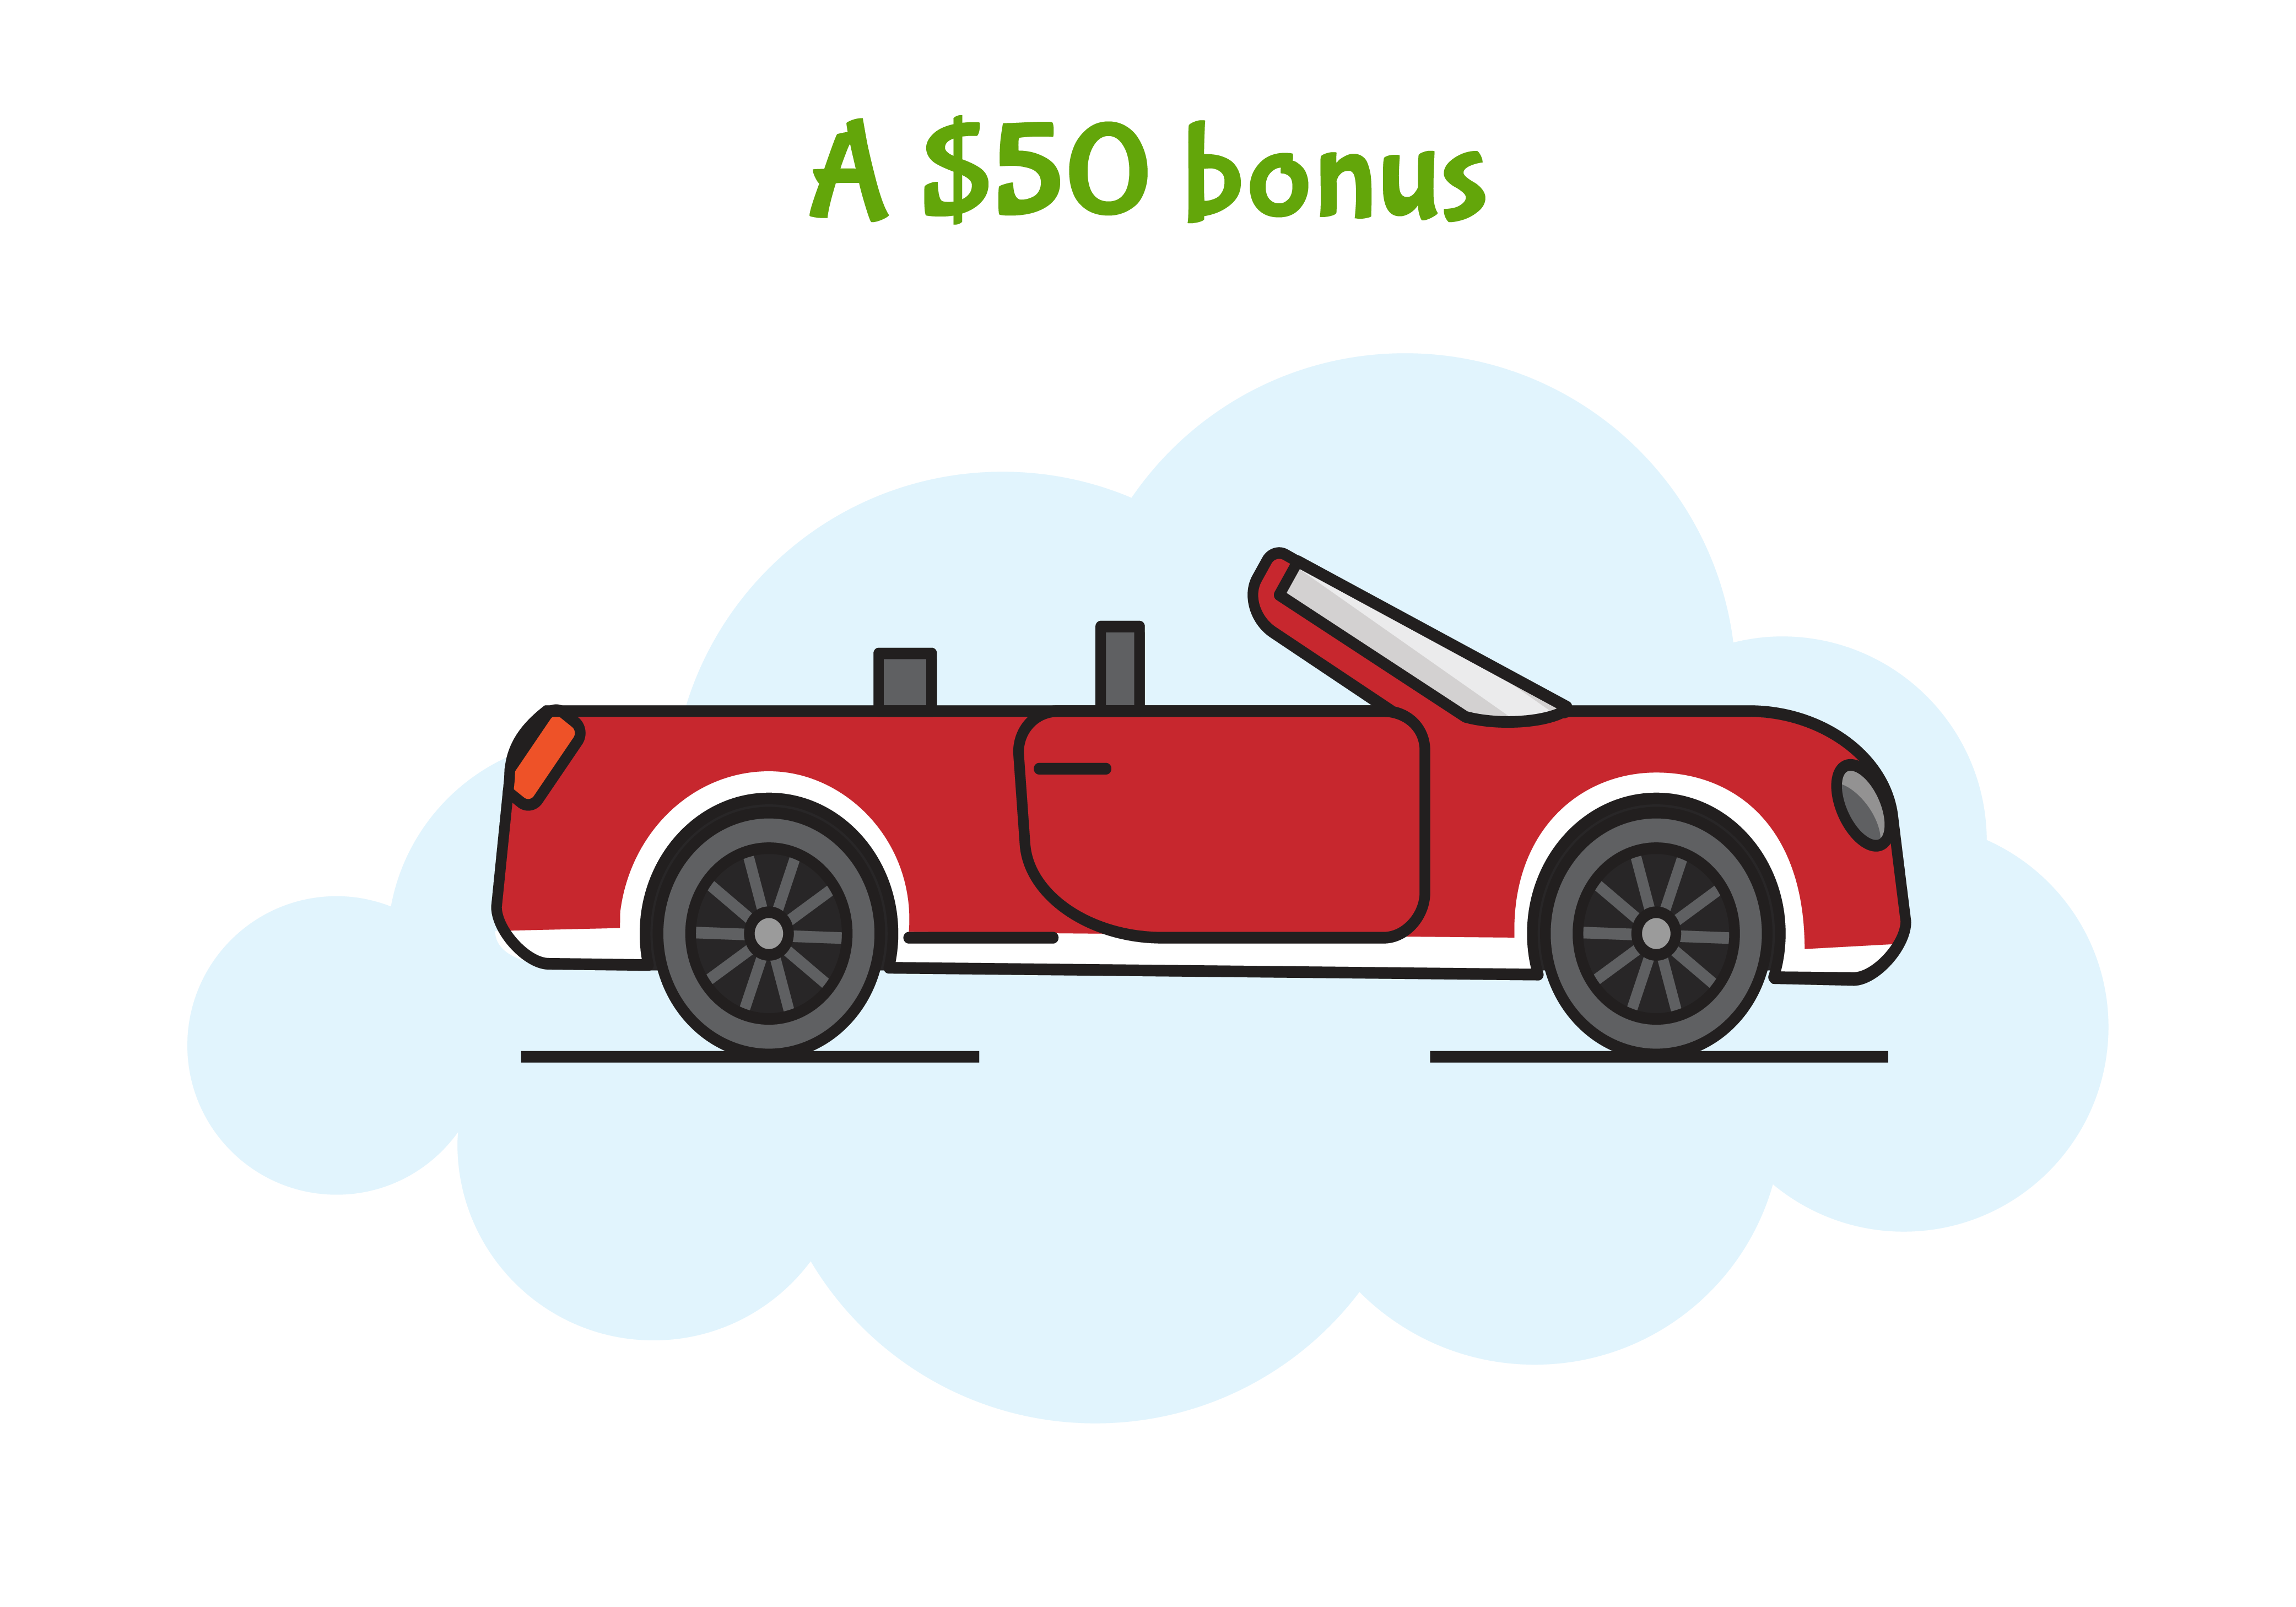 A $50 bonus, graphic car